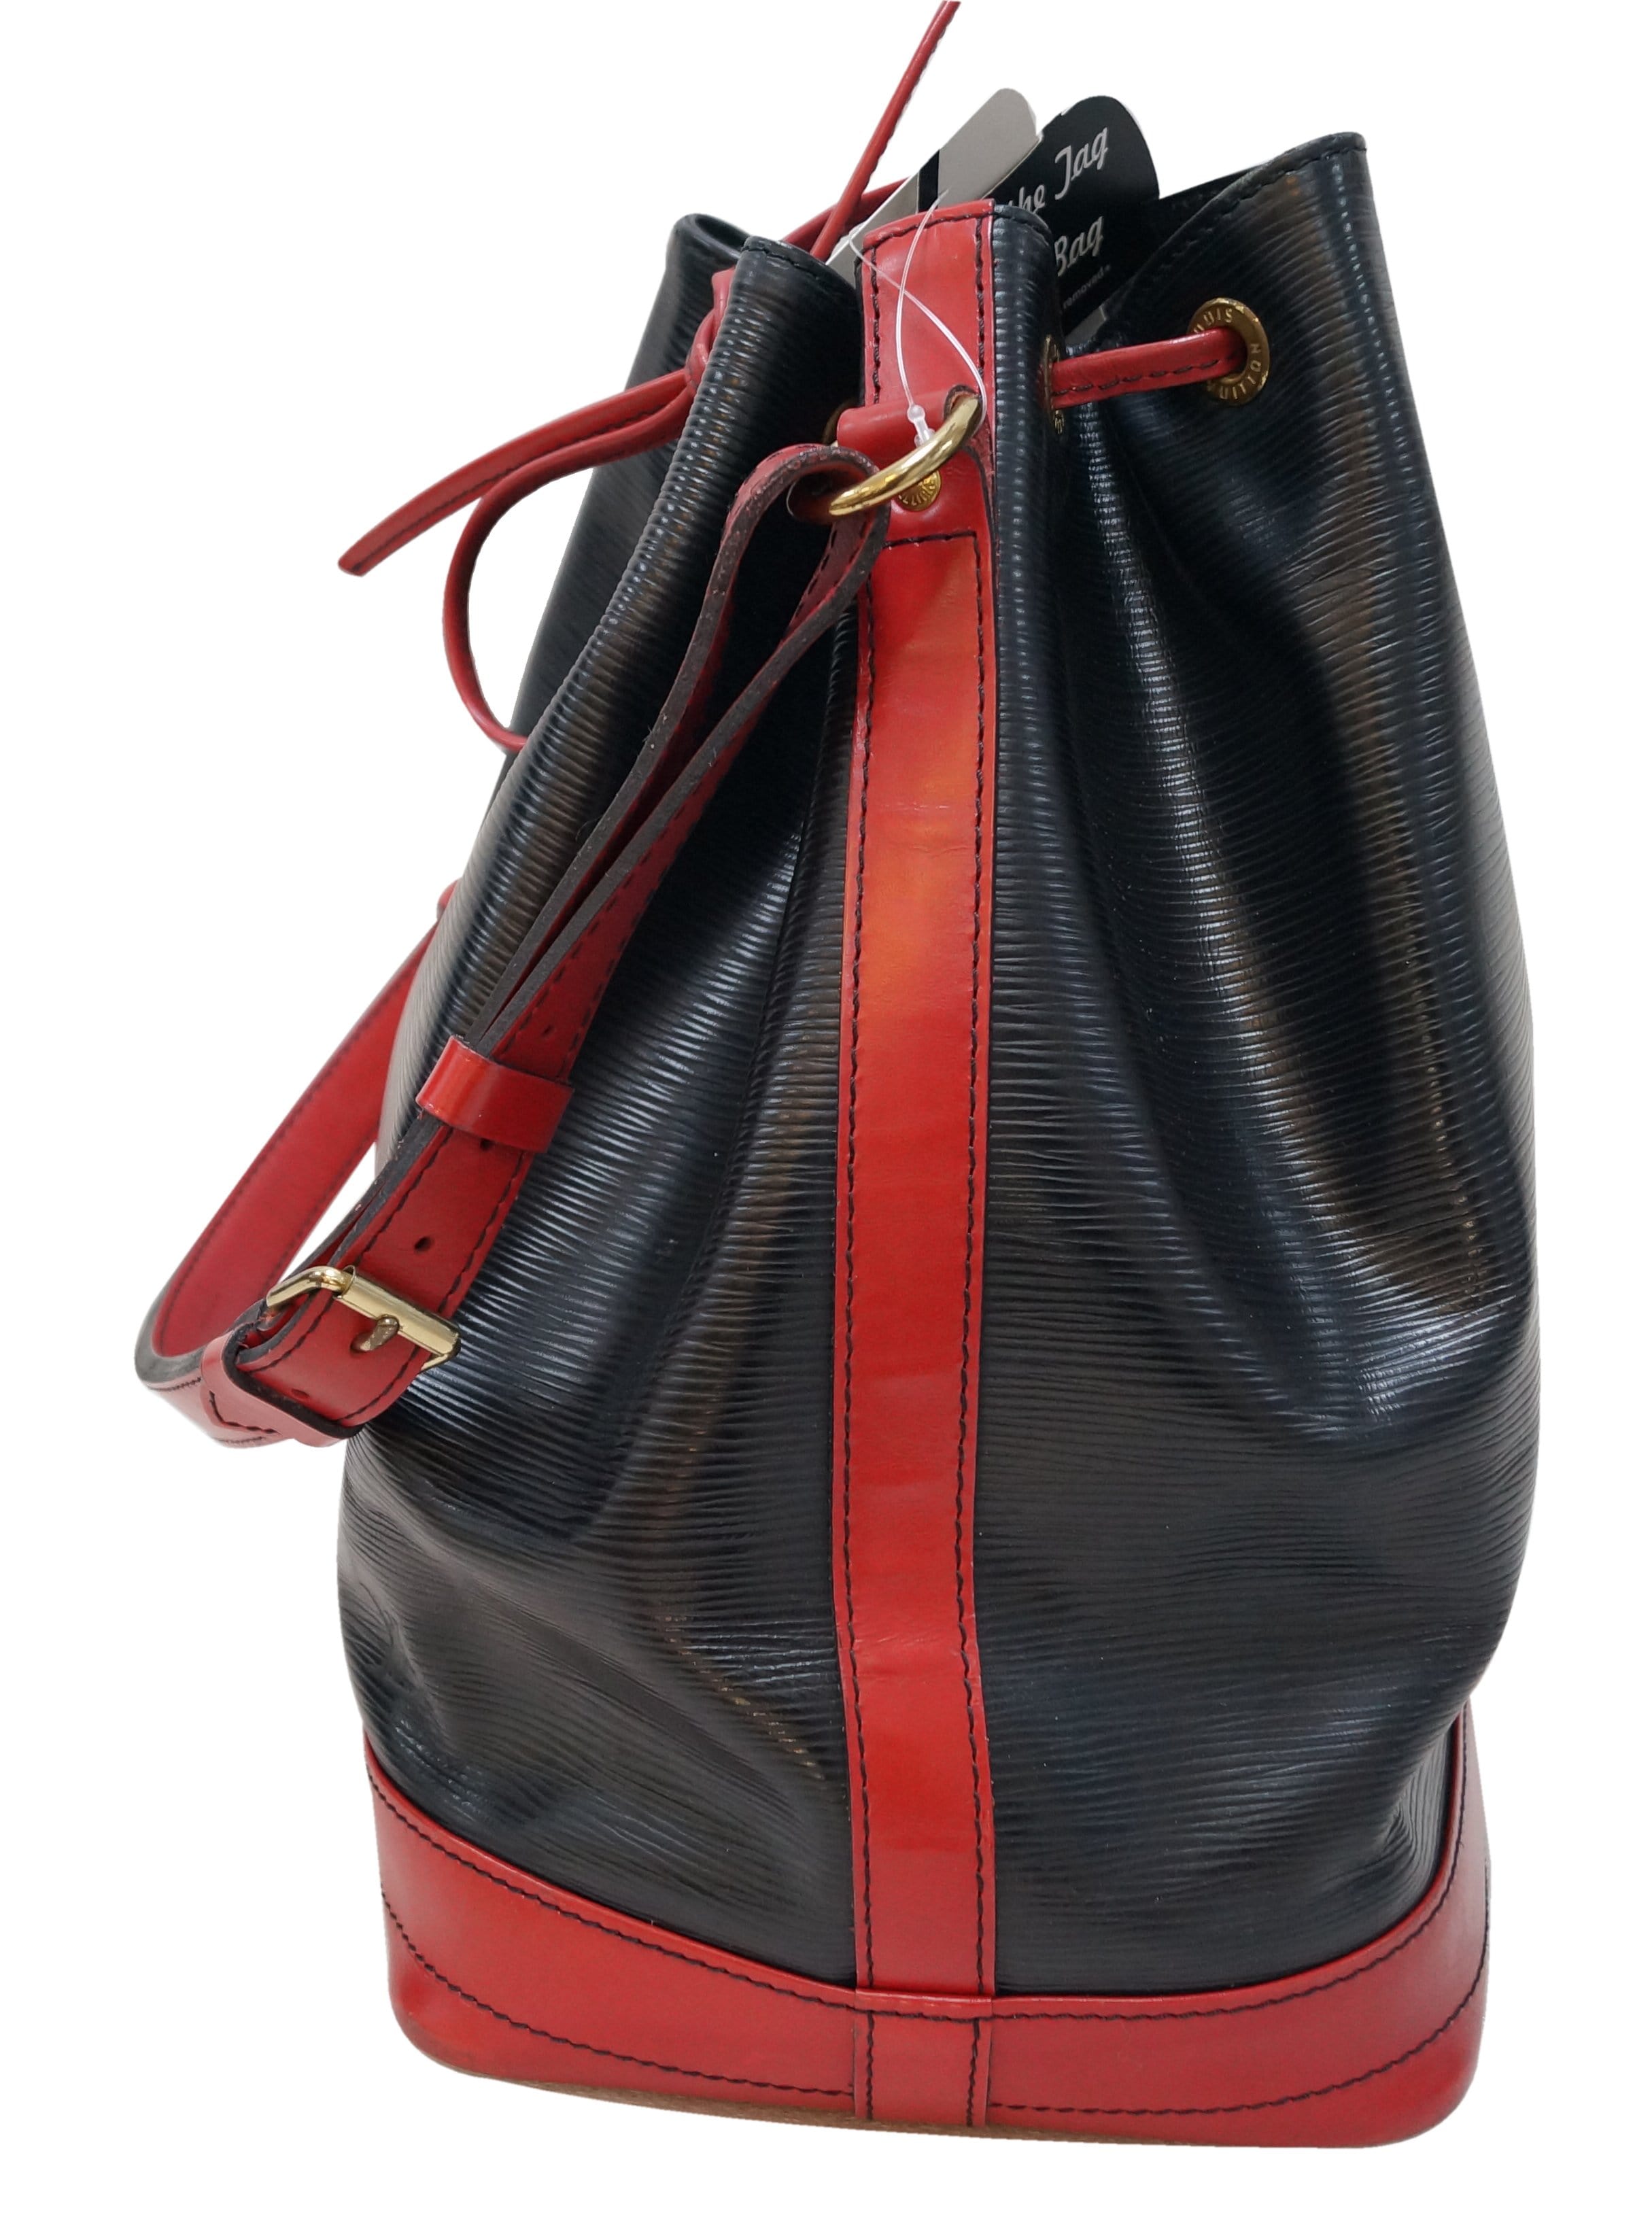 Authentic Louis Vuitton Bicolor, Large, Epi Noe Handbag, Red & Black